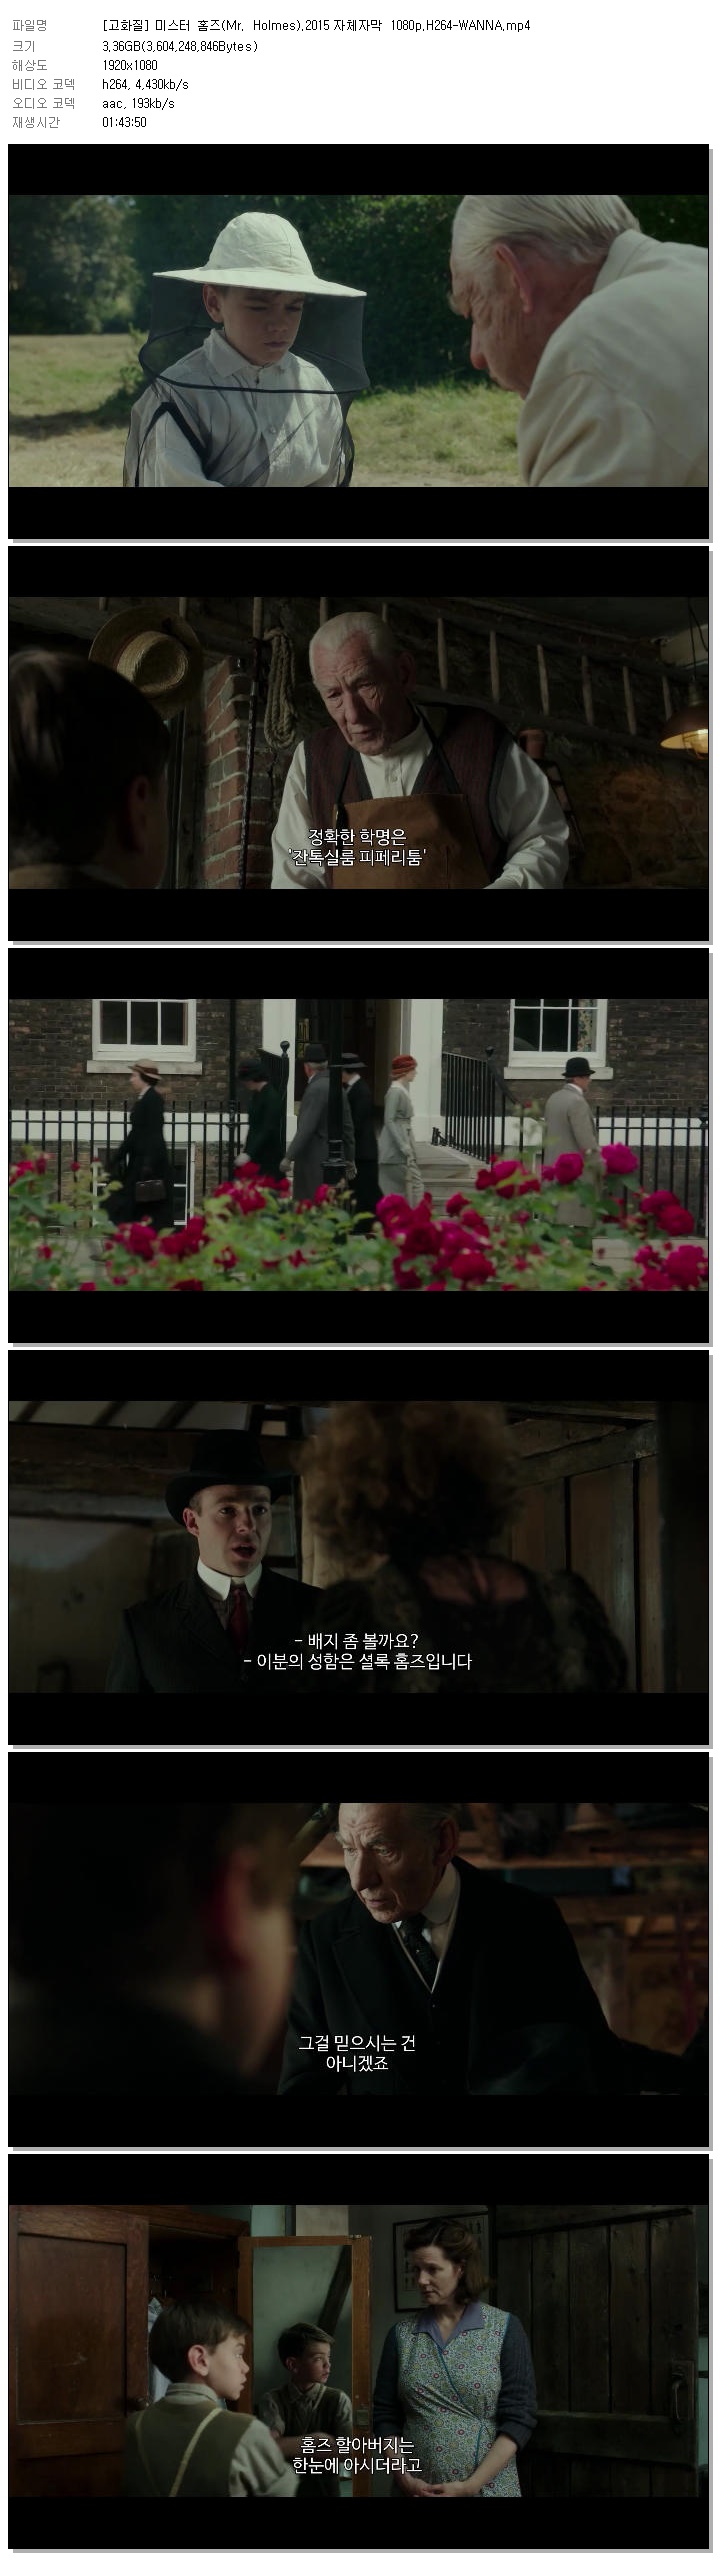 [고화질] 미스터 홈즈(Mr. Holmes).2015 자체자막 1080p.H264-WANNA